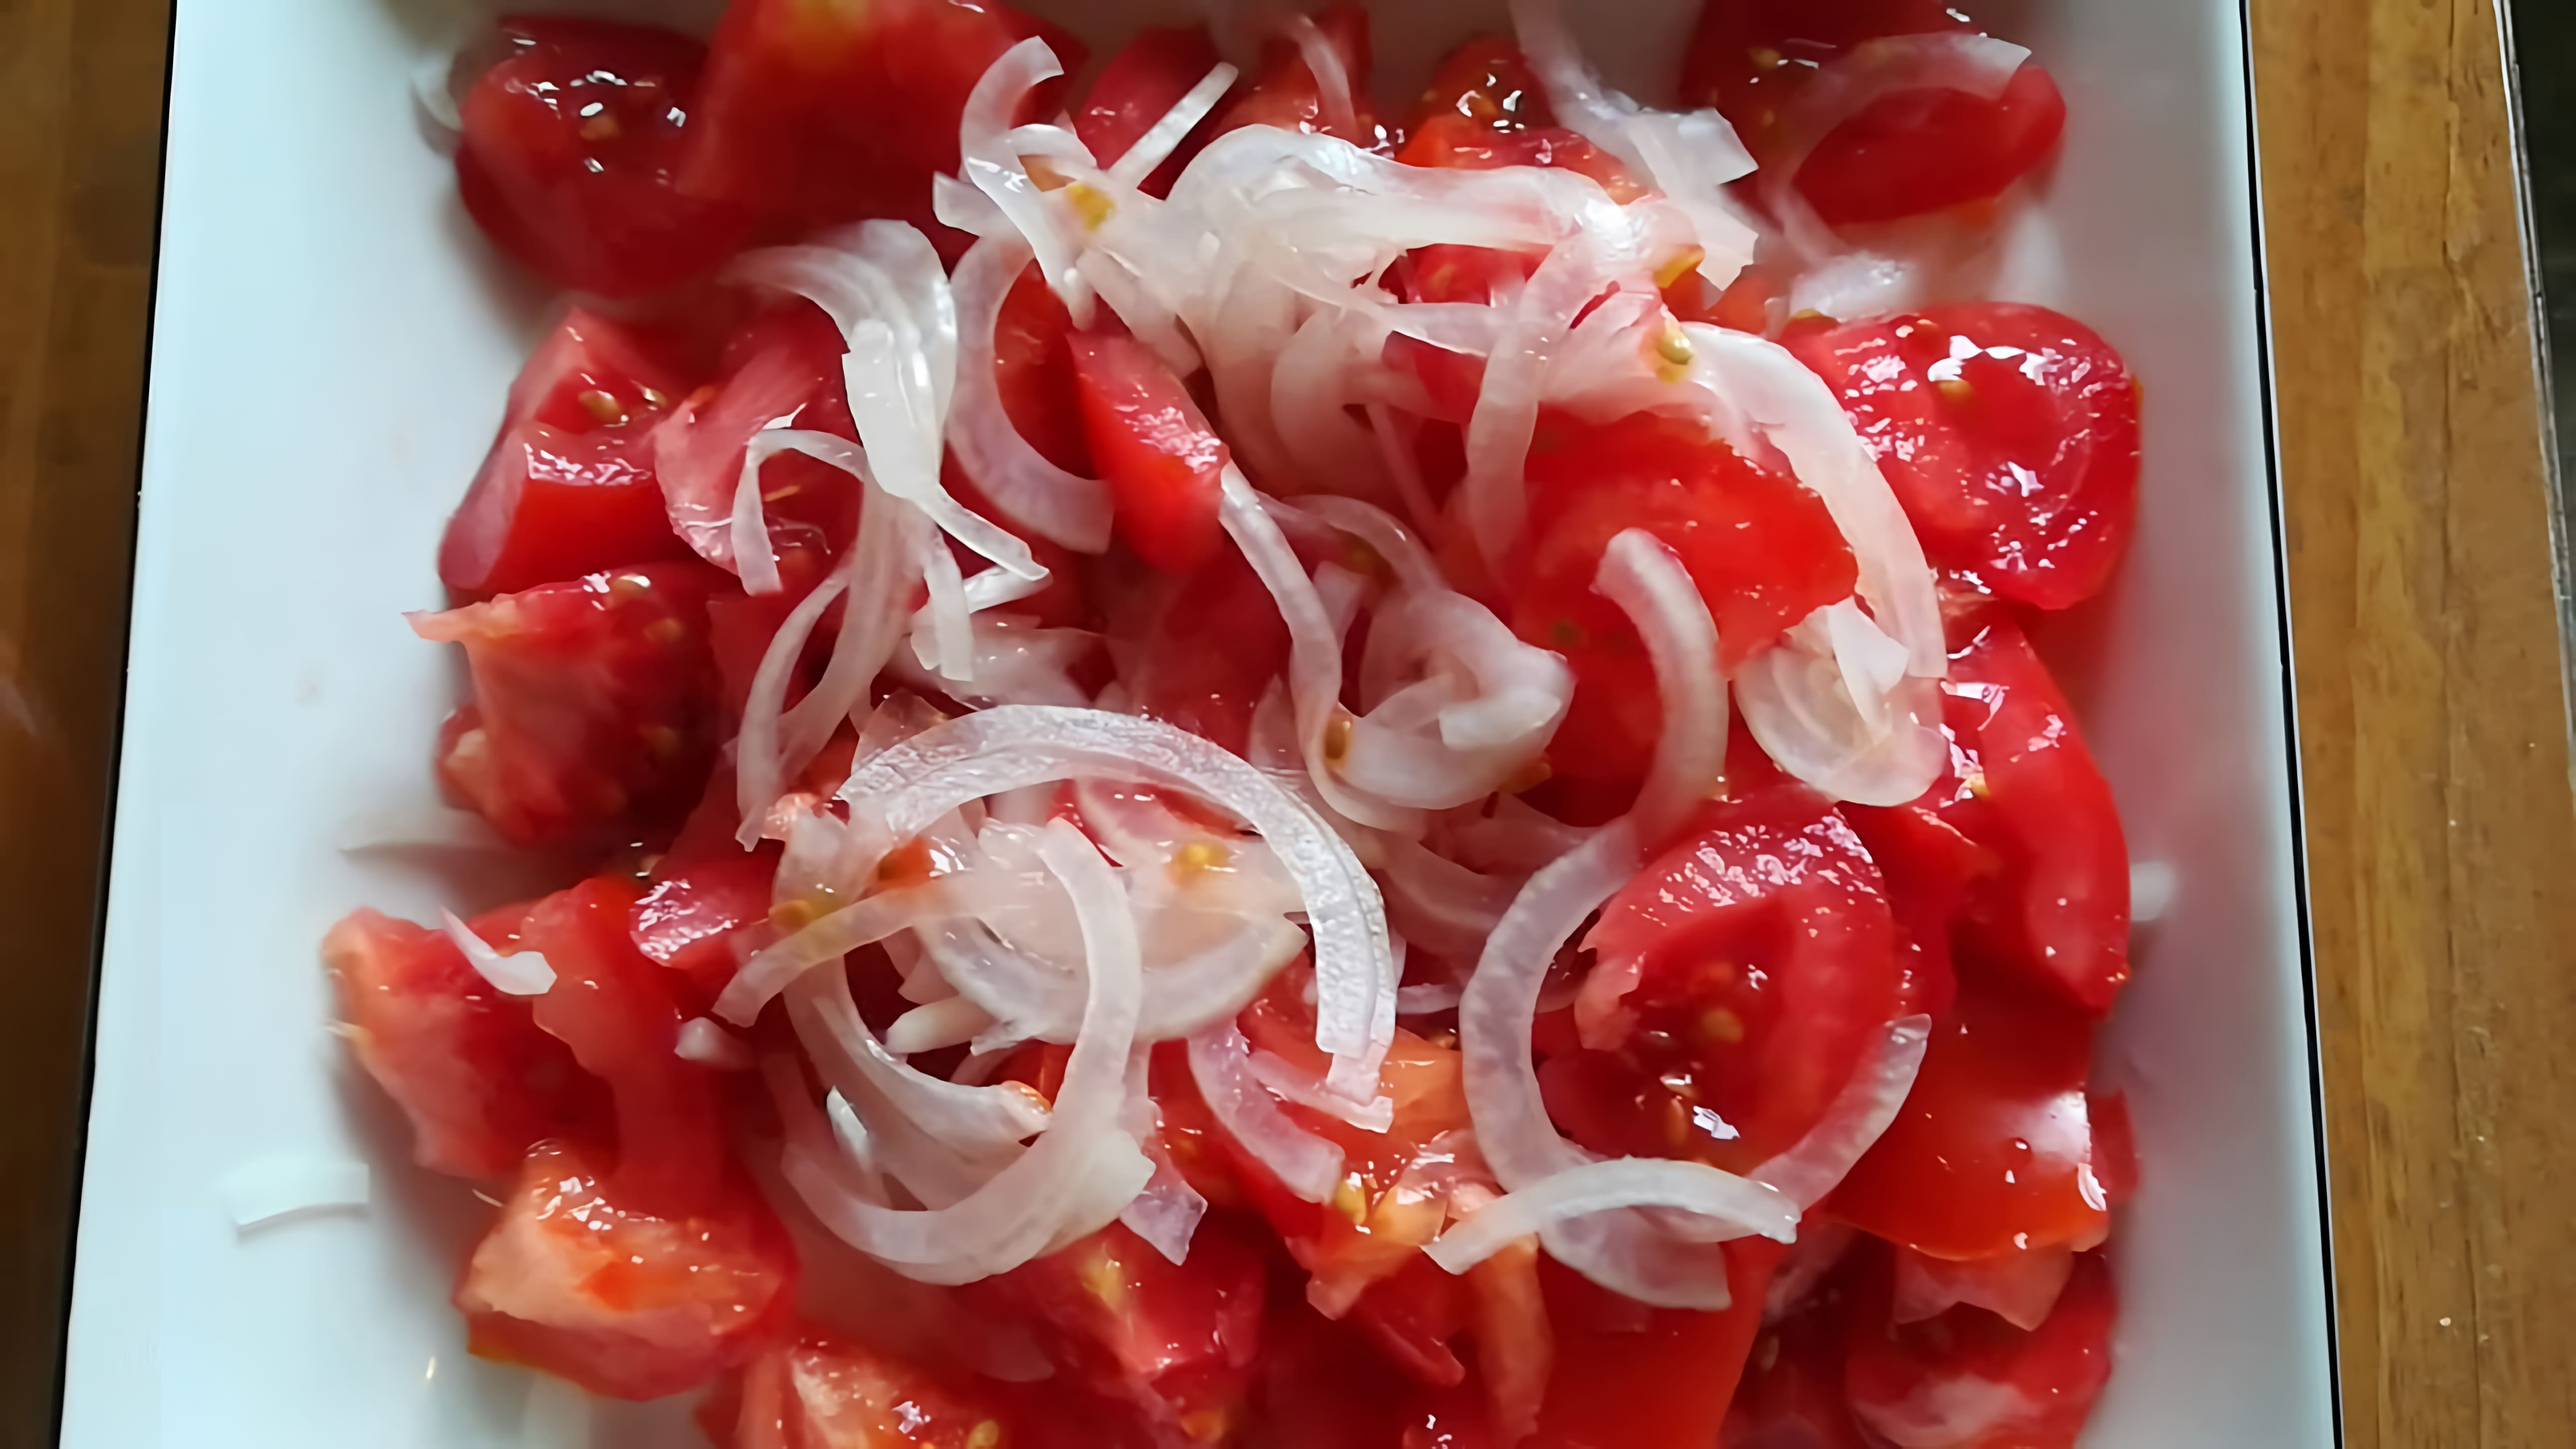 Салат из помидоров, лука и сметаны - это вкусное и простое блюдо, которое можно приготовить в домашних условиях